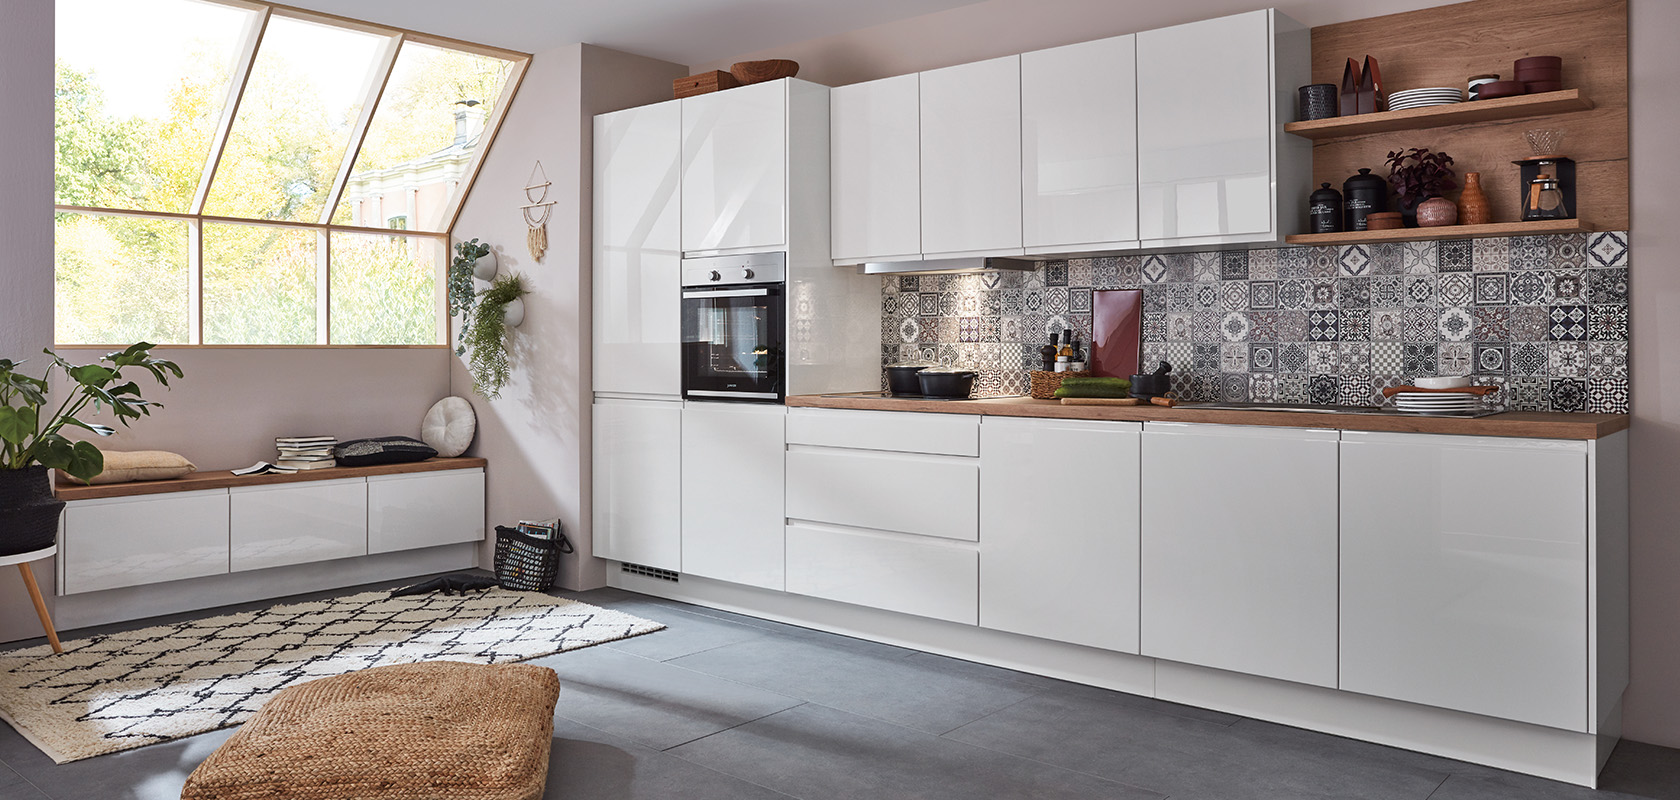 Nowoczesne wnętrze kuchni z czystą białą zabudową, geometrycznymi płytkami na ścianie kuchennej i drewnianymi detalami, tworzące przytulną, a jednocześnie stylową przestrzeń do gotowania i życia.